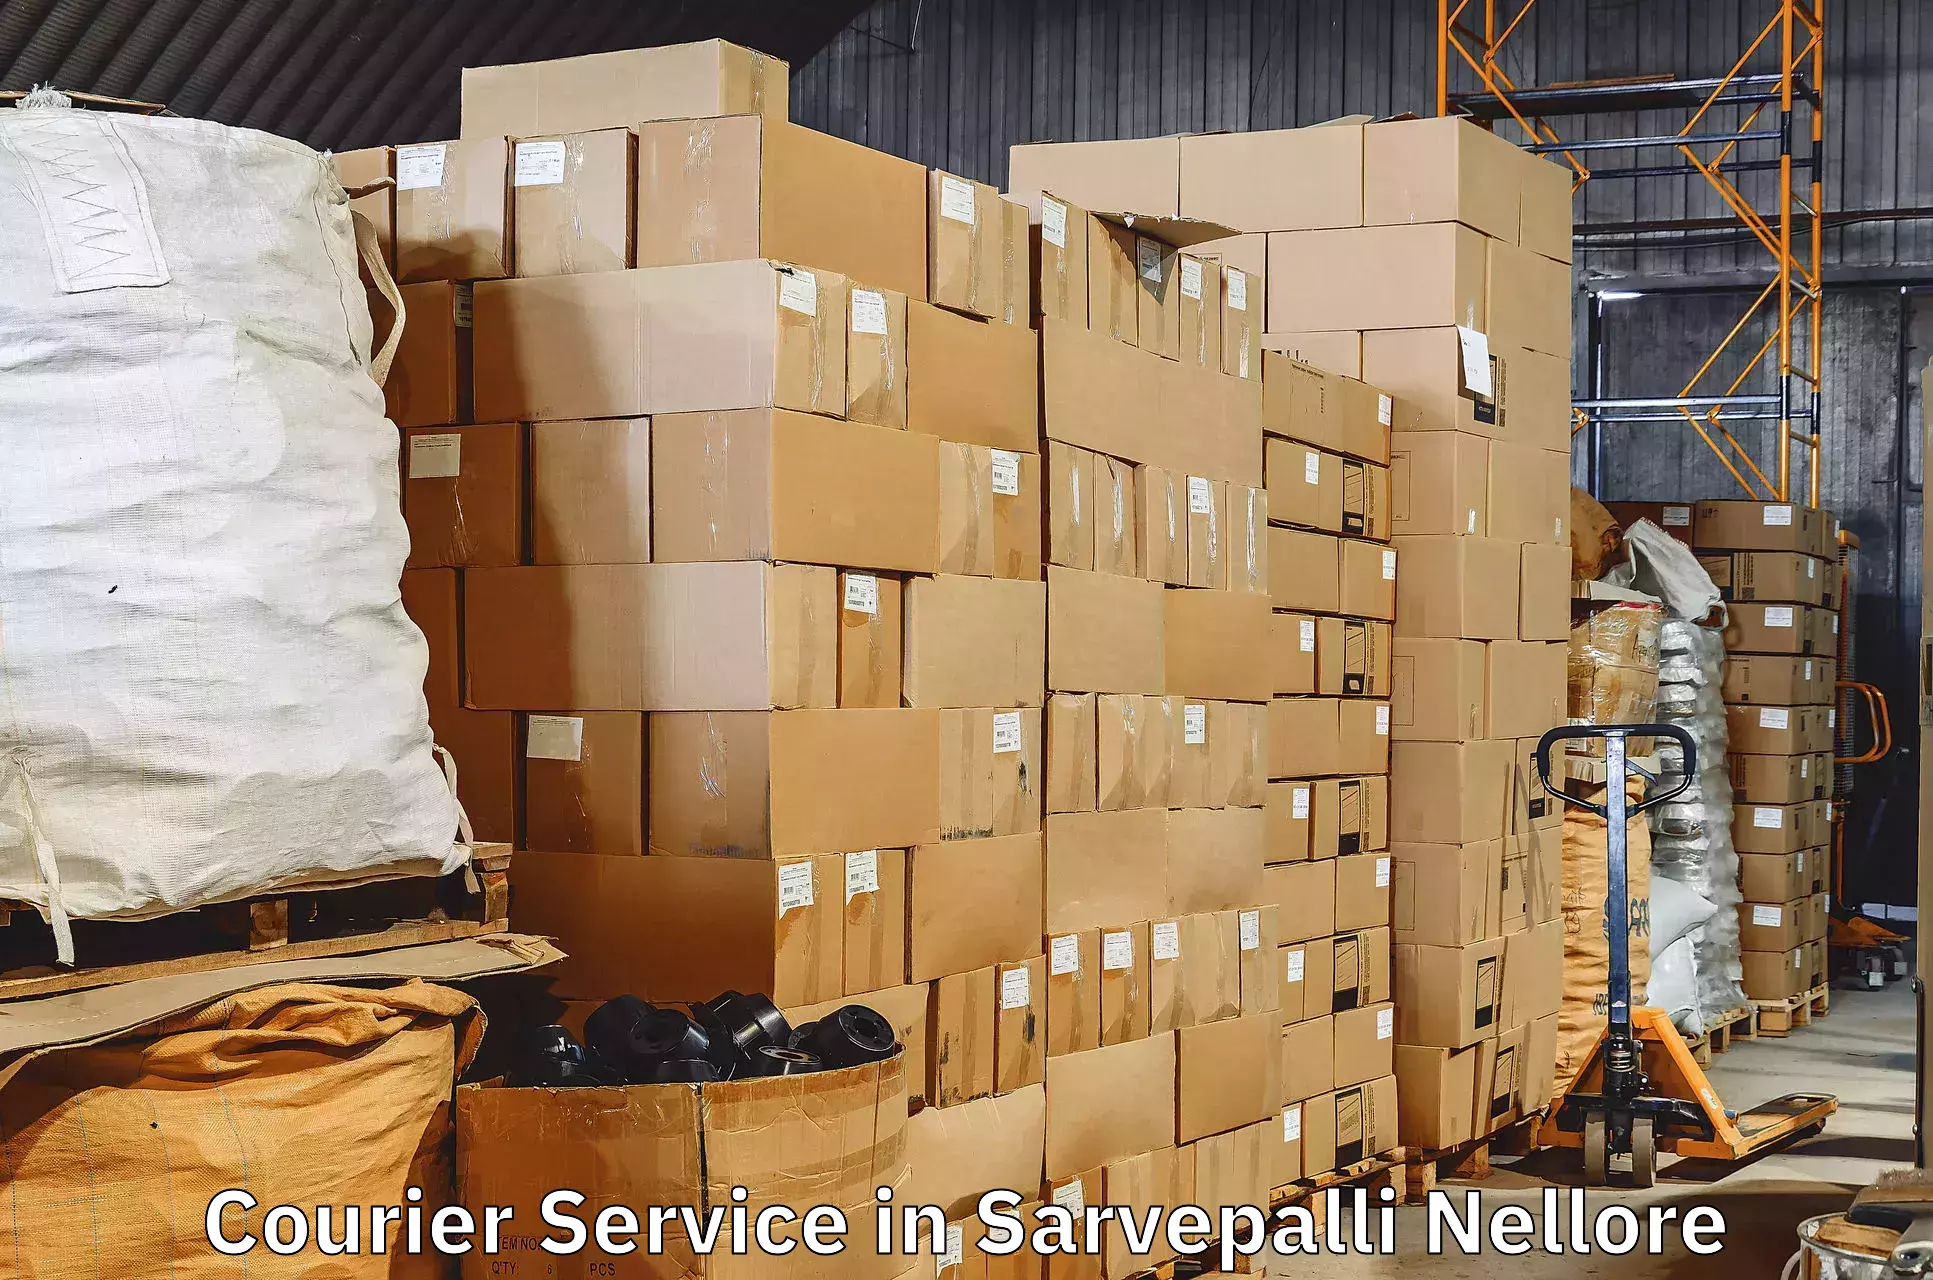 Advanced parcel tracking in Sarvepalli Nellore